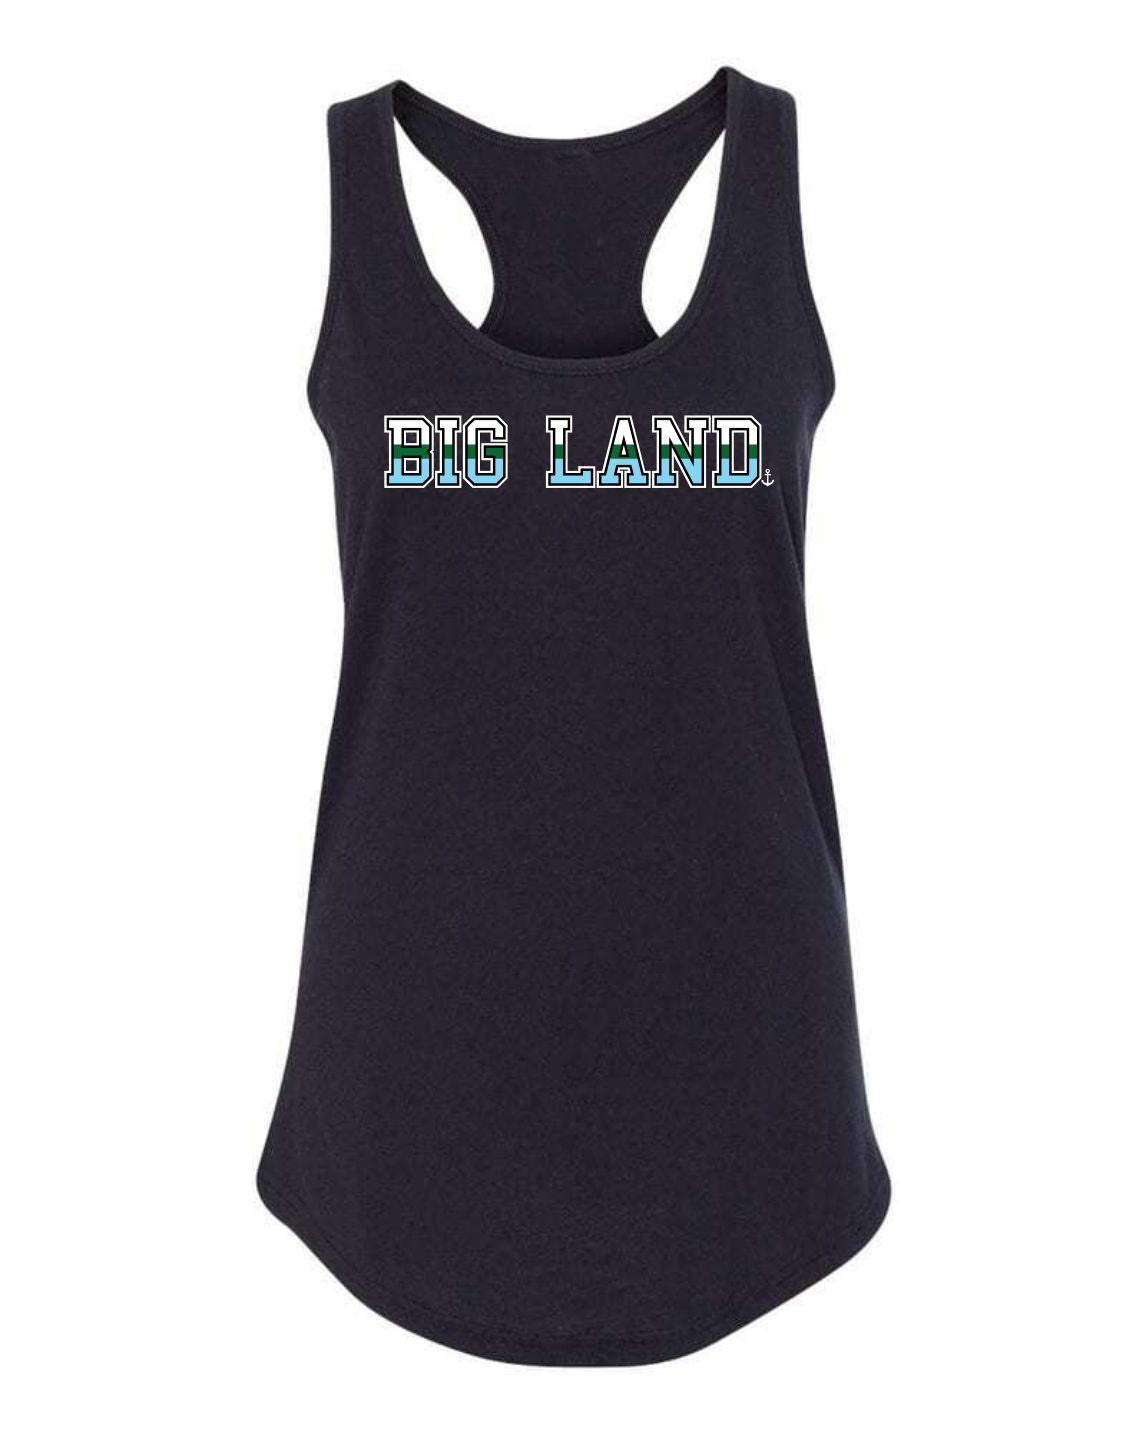 "Big Land" Ladies' Tank Top